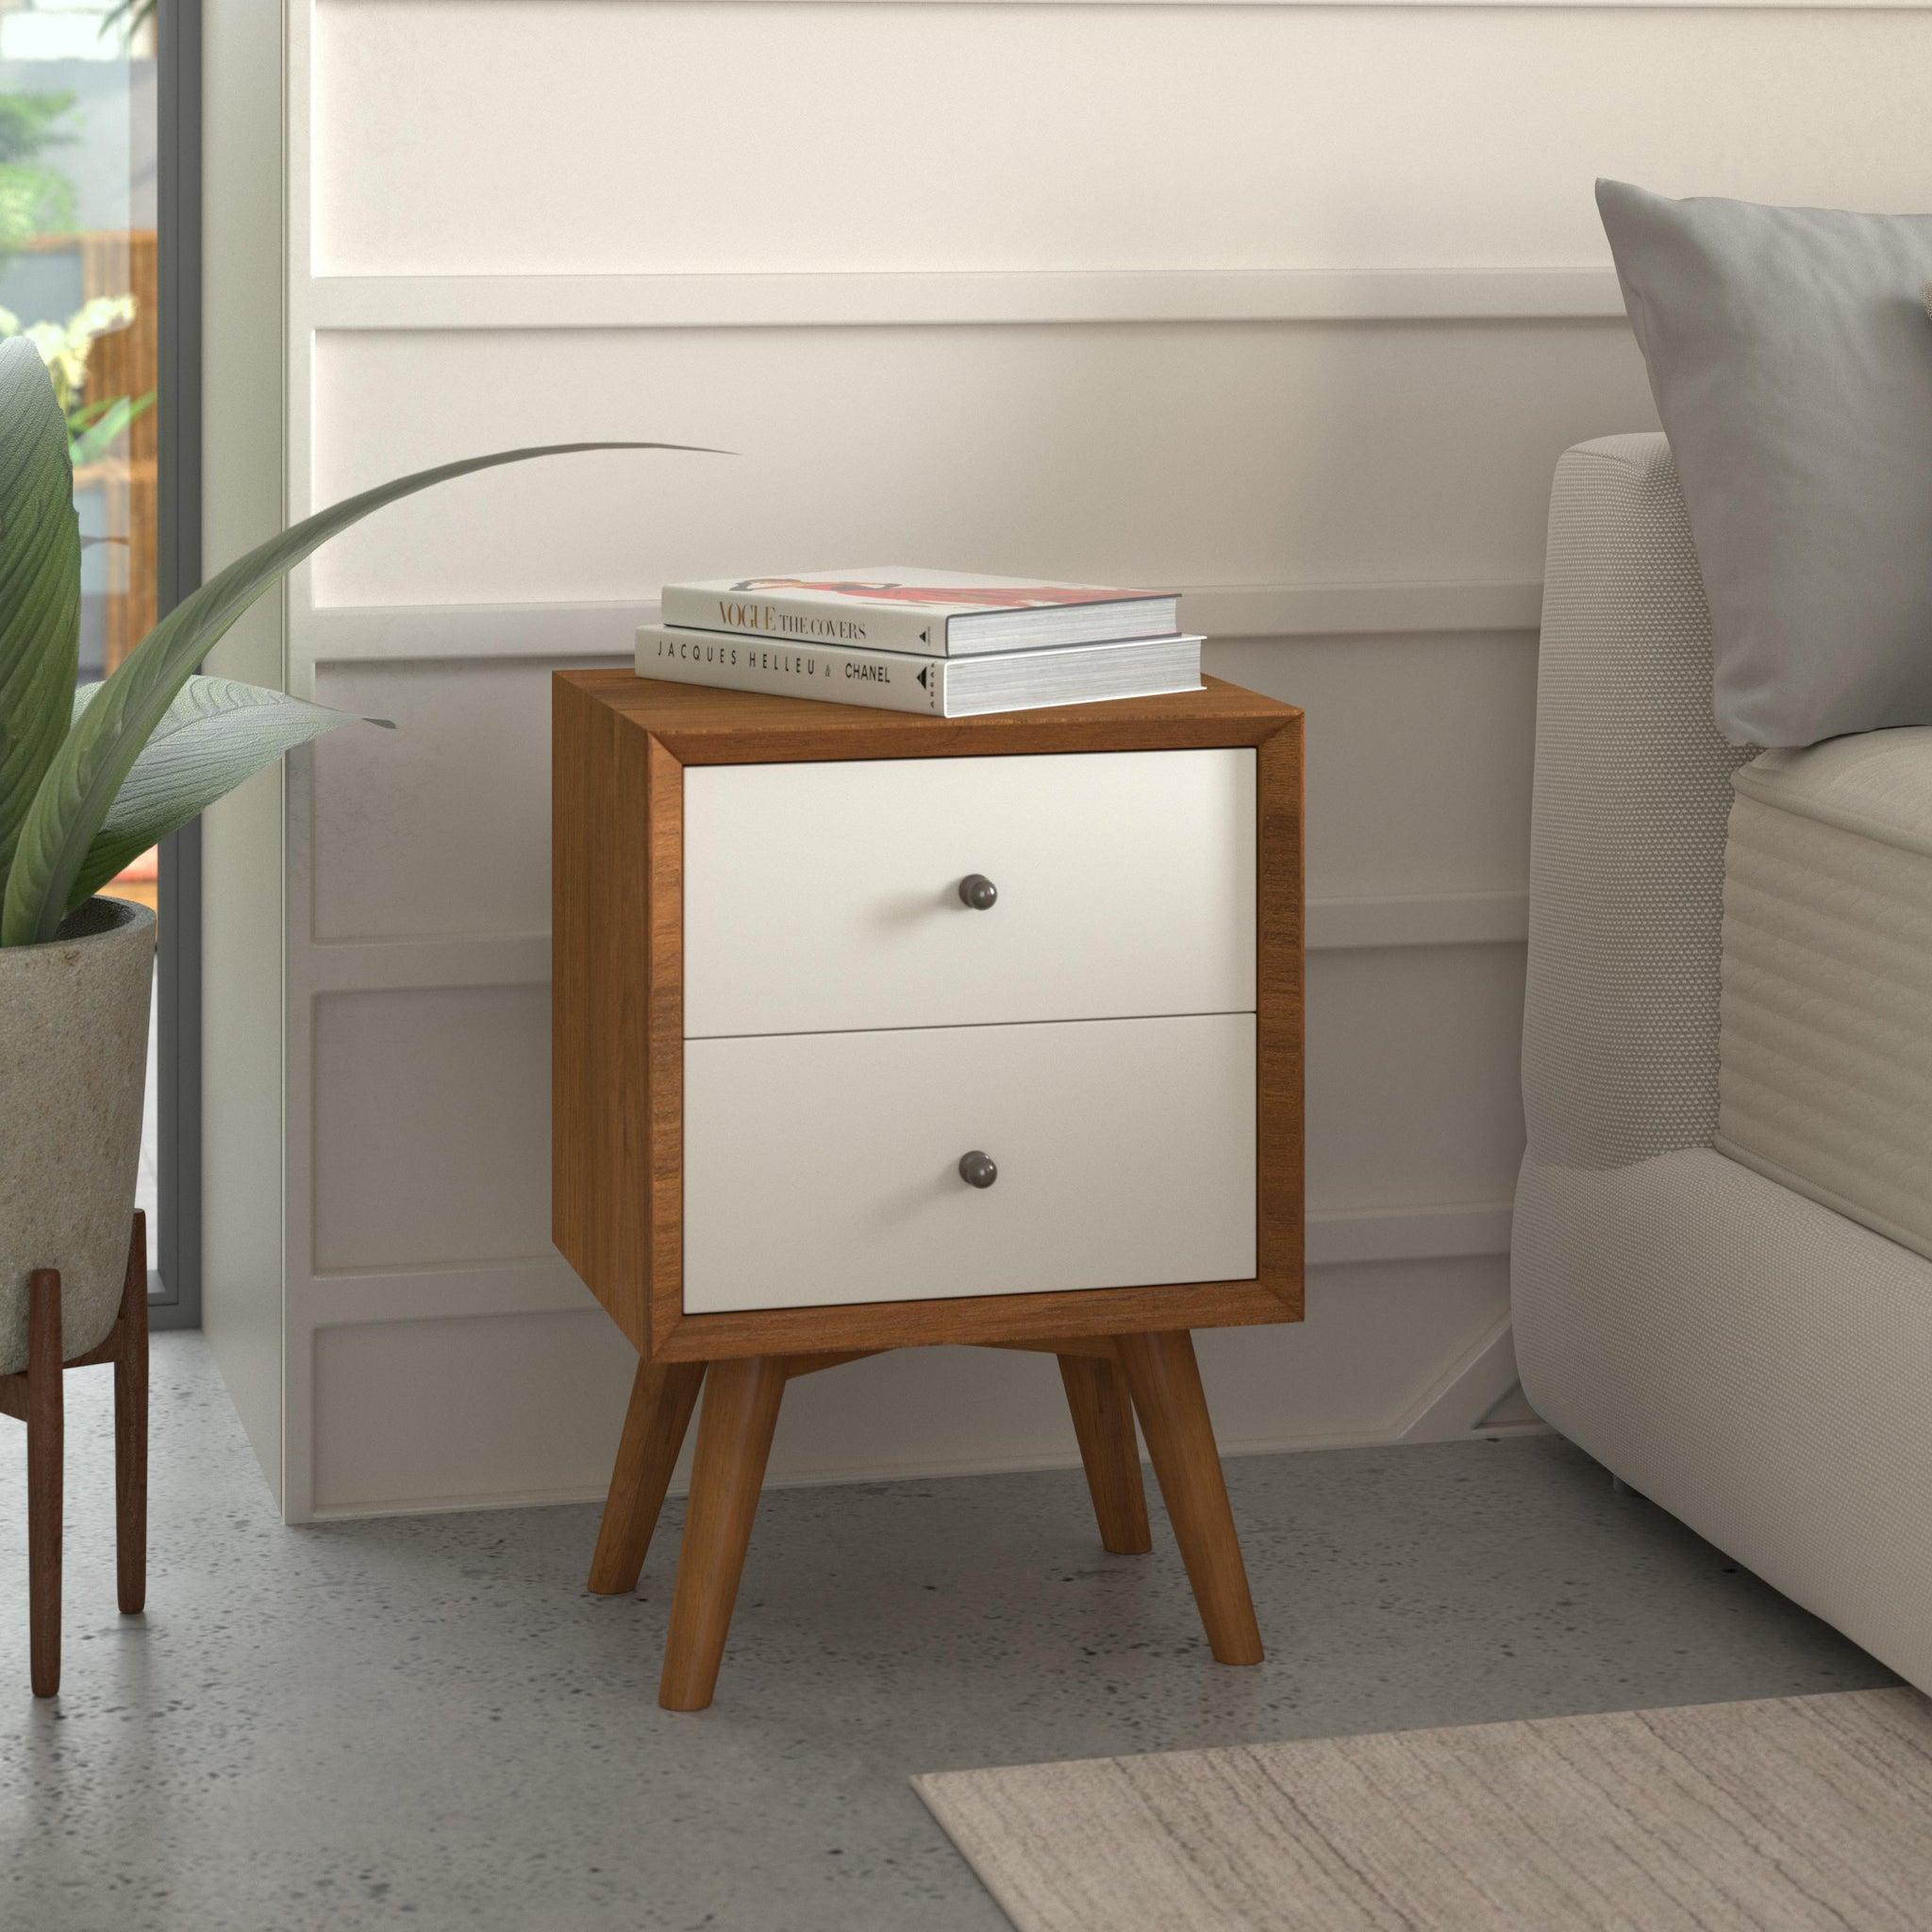 

        
Alpine Furniture SOPHIA/FLYNN Platform Bedroom Set Brown Faux Leather 840108500541
